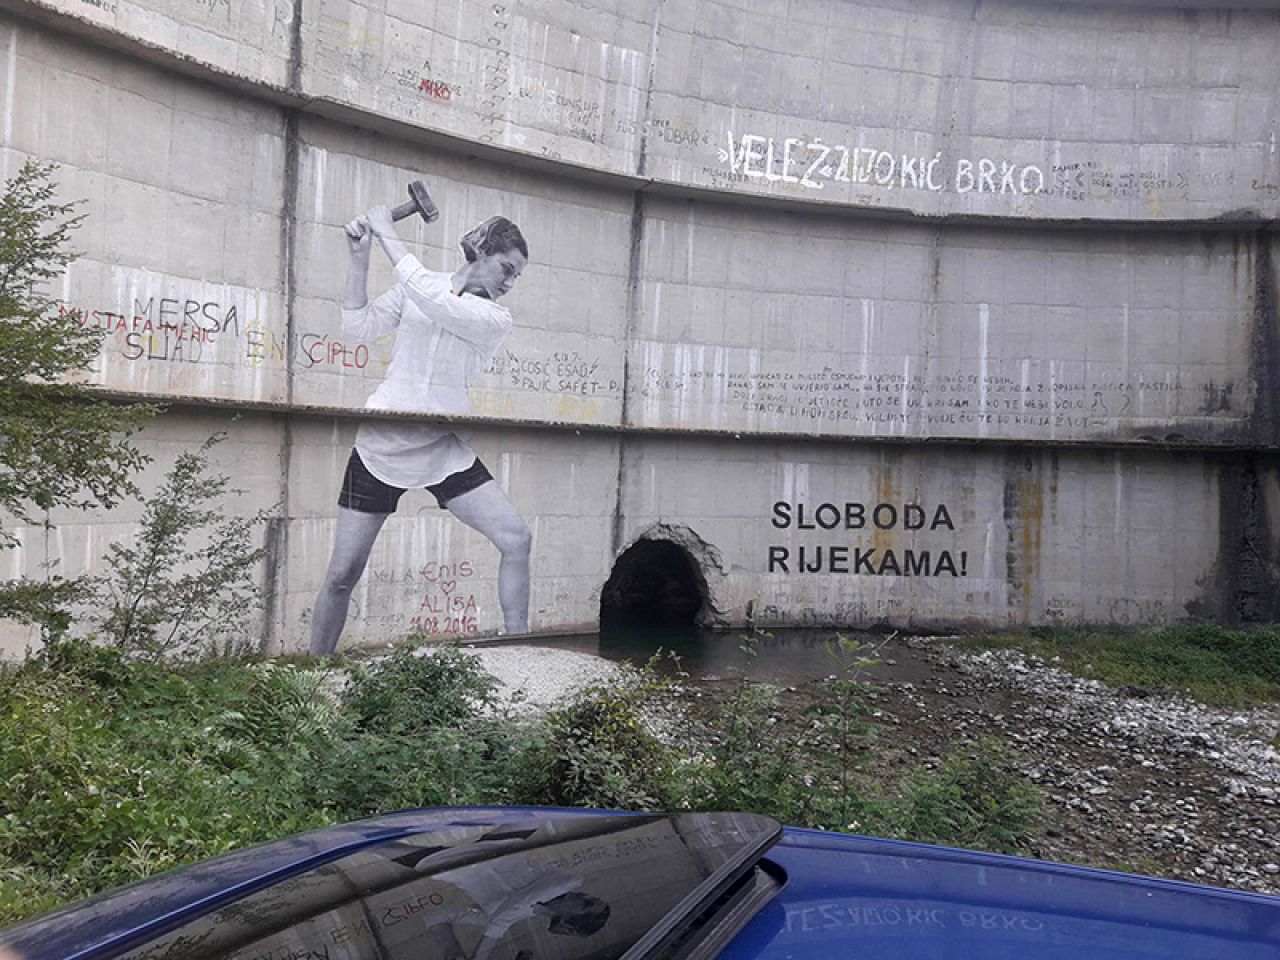 Osvanuo grafit na brani Idbar: ''Sloboda rijekama''